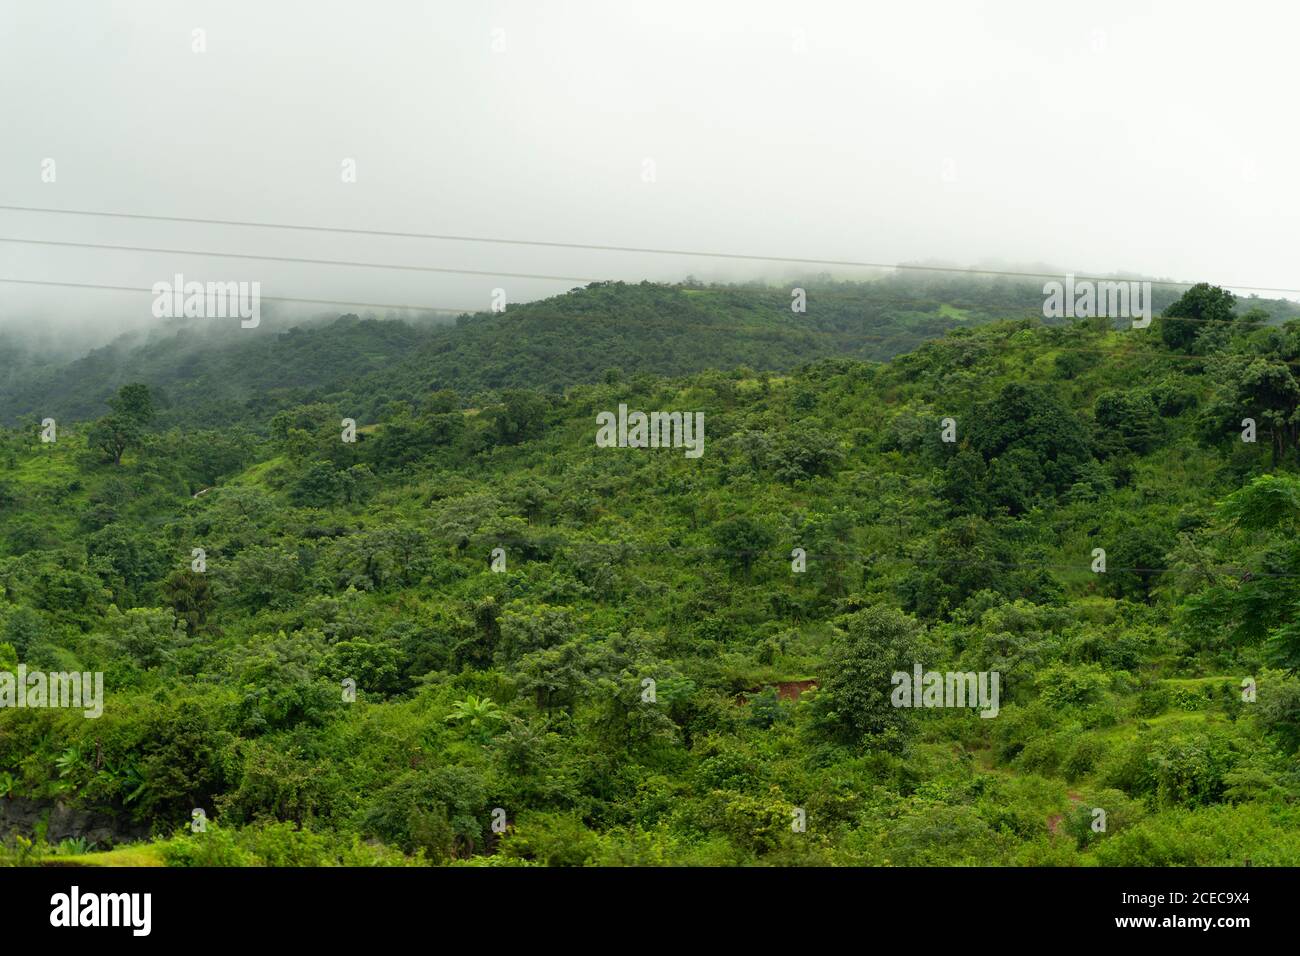 Paysages de Ghats occidentaux avec chaîne de montagnes de Sahyadri, arbres luxuriants et verts Banque D'Images